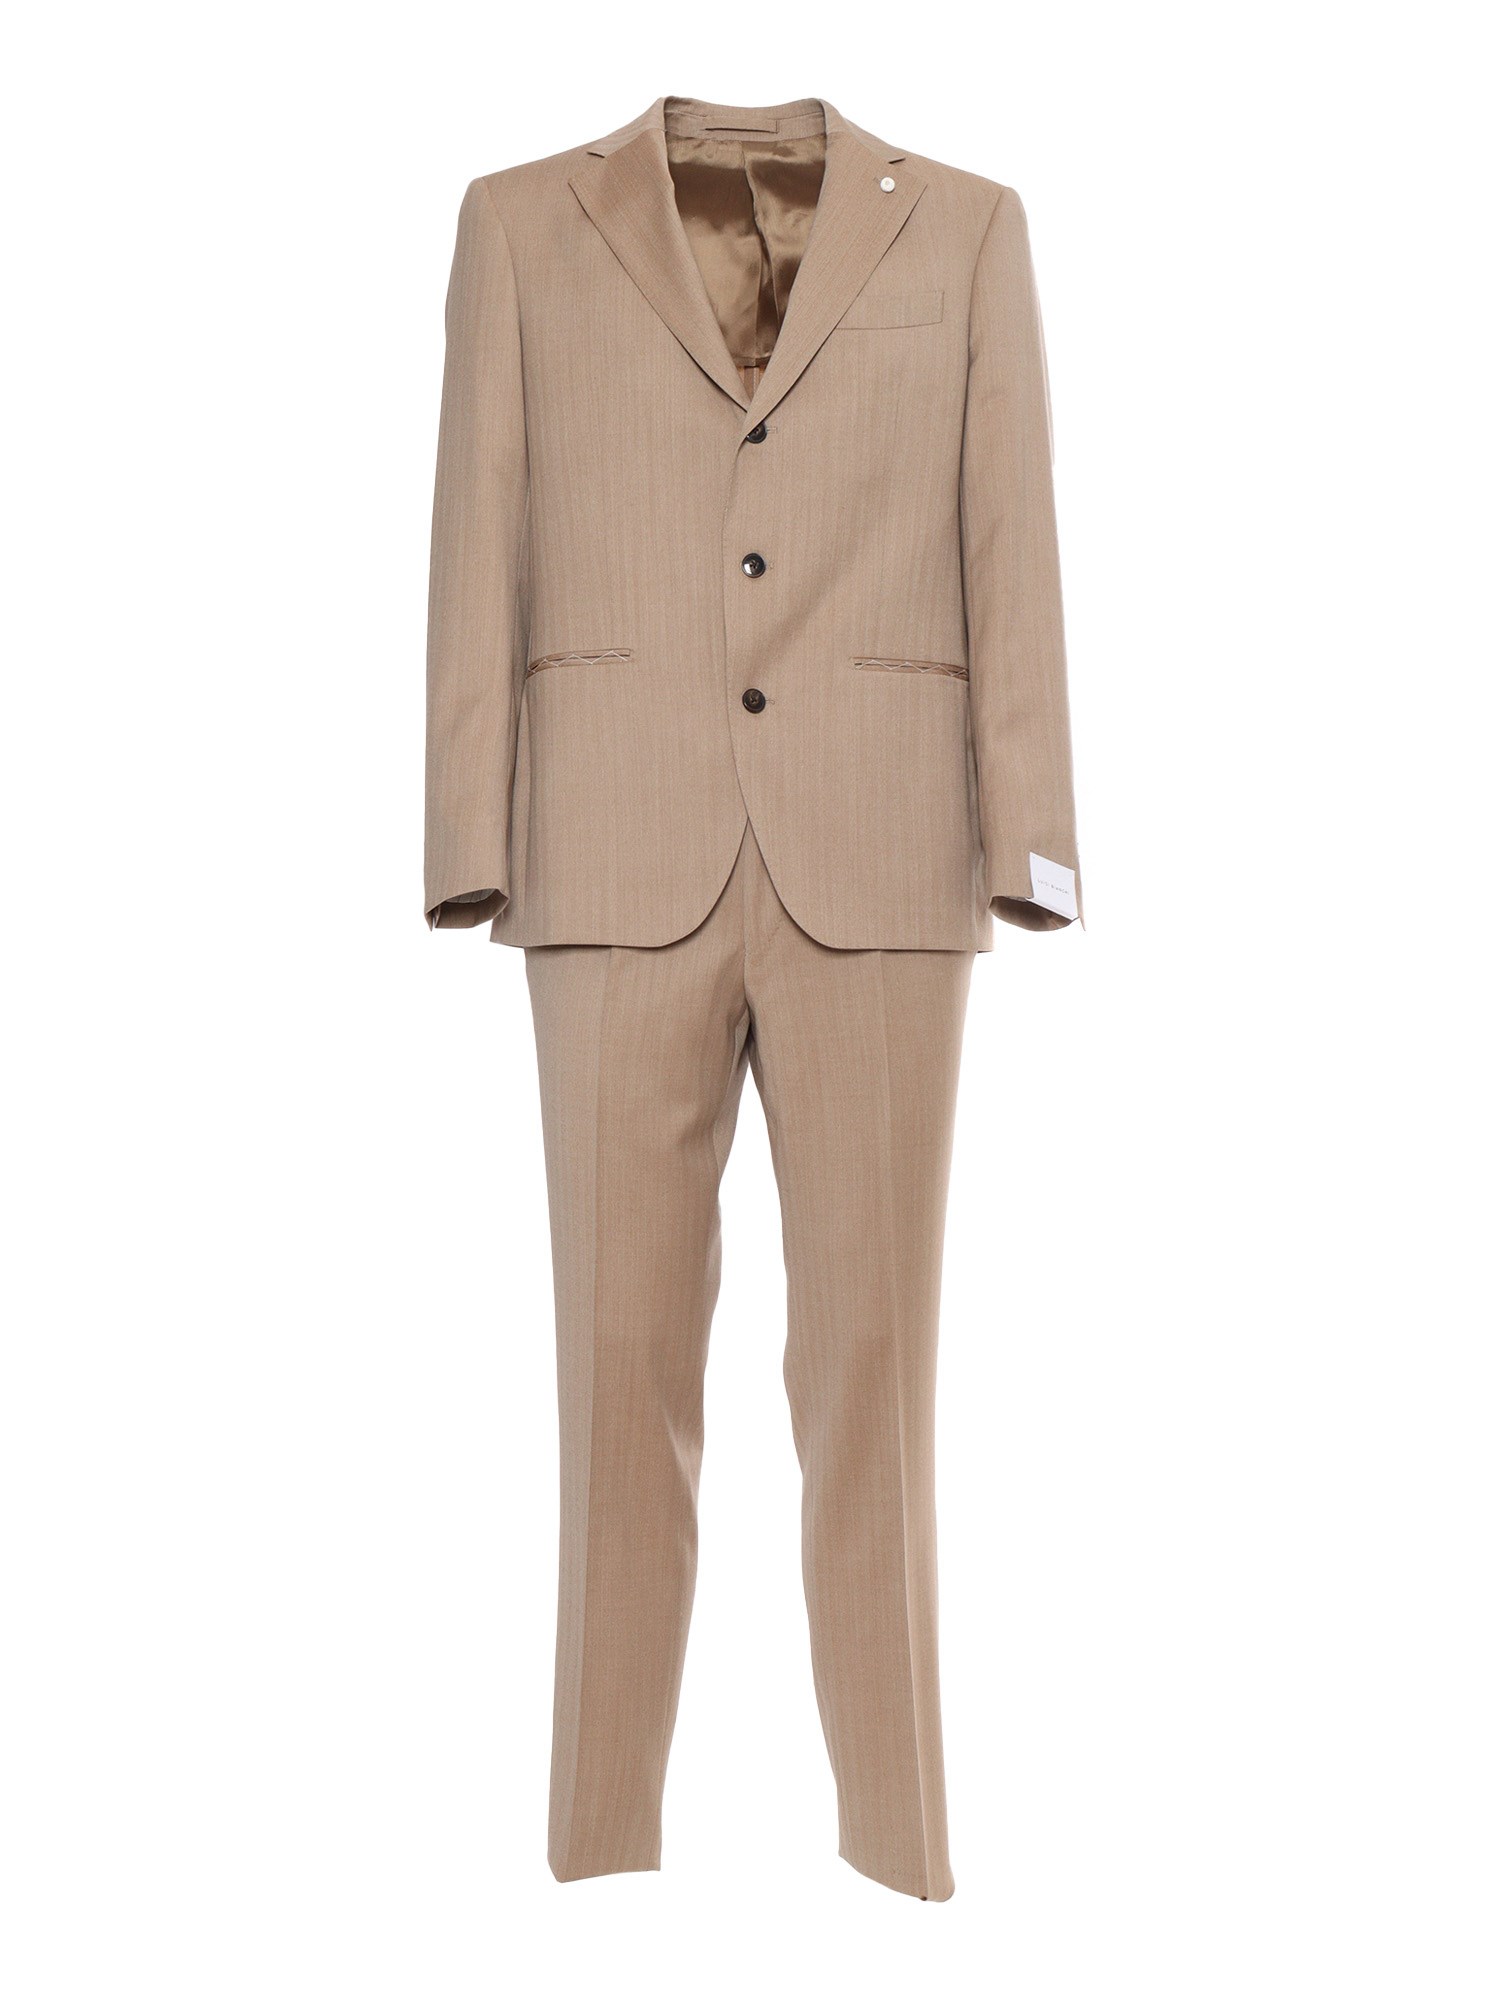 Shop Luigi Bianchi Brown Men's Suit